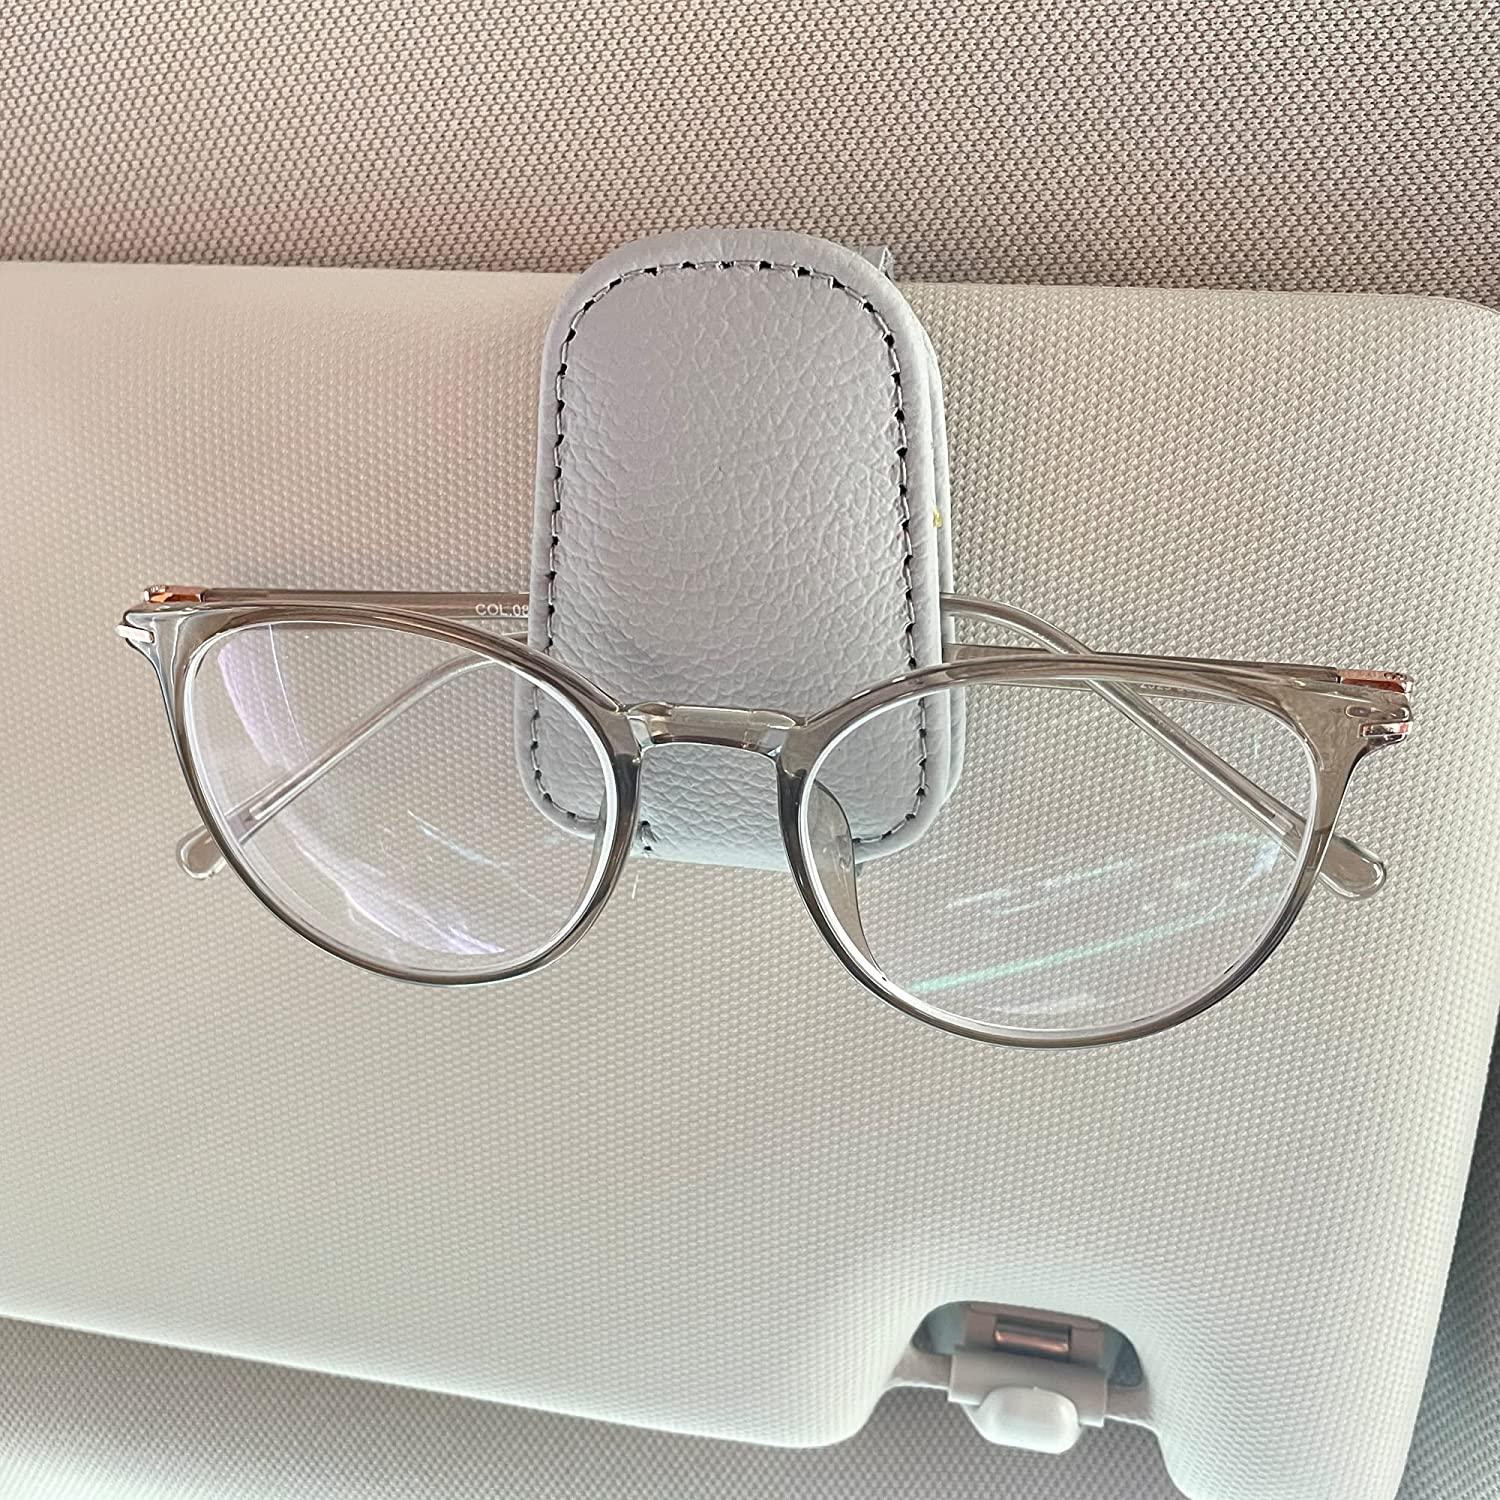 Kinglyday Sunglasses Holders for Car Sun Visor, Magnetic Leather Glasses Eyeglass Hanger Clip for Car, Ticket Card Clip Eyeglasses Mount, Car Visor Accessories - KinglyDay